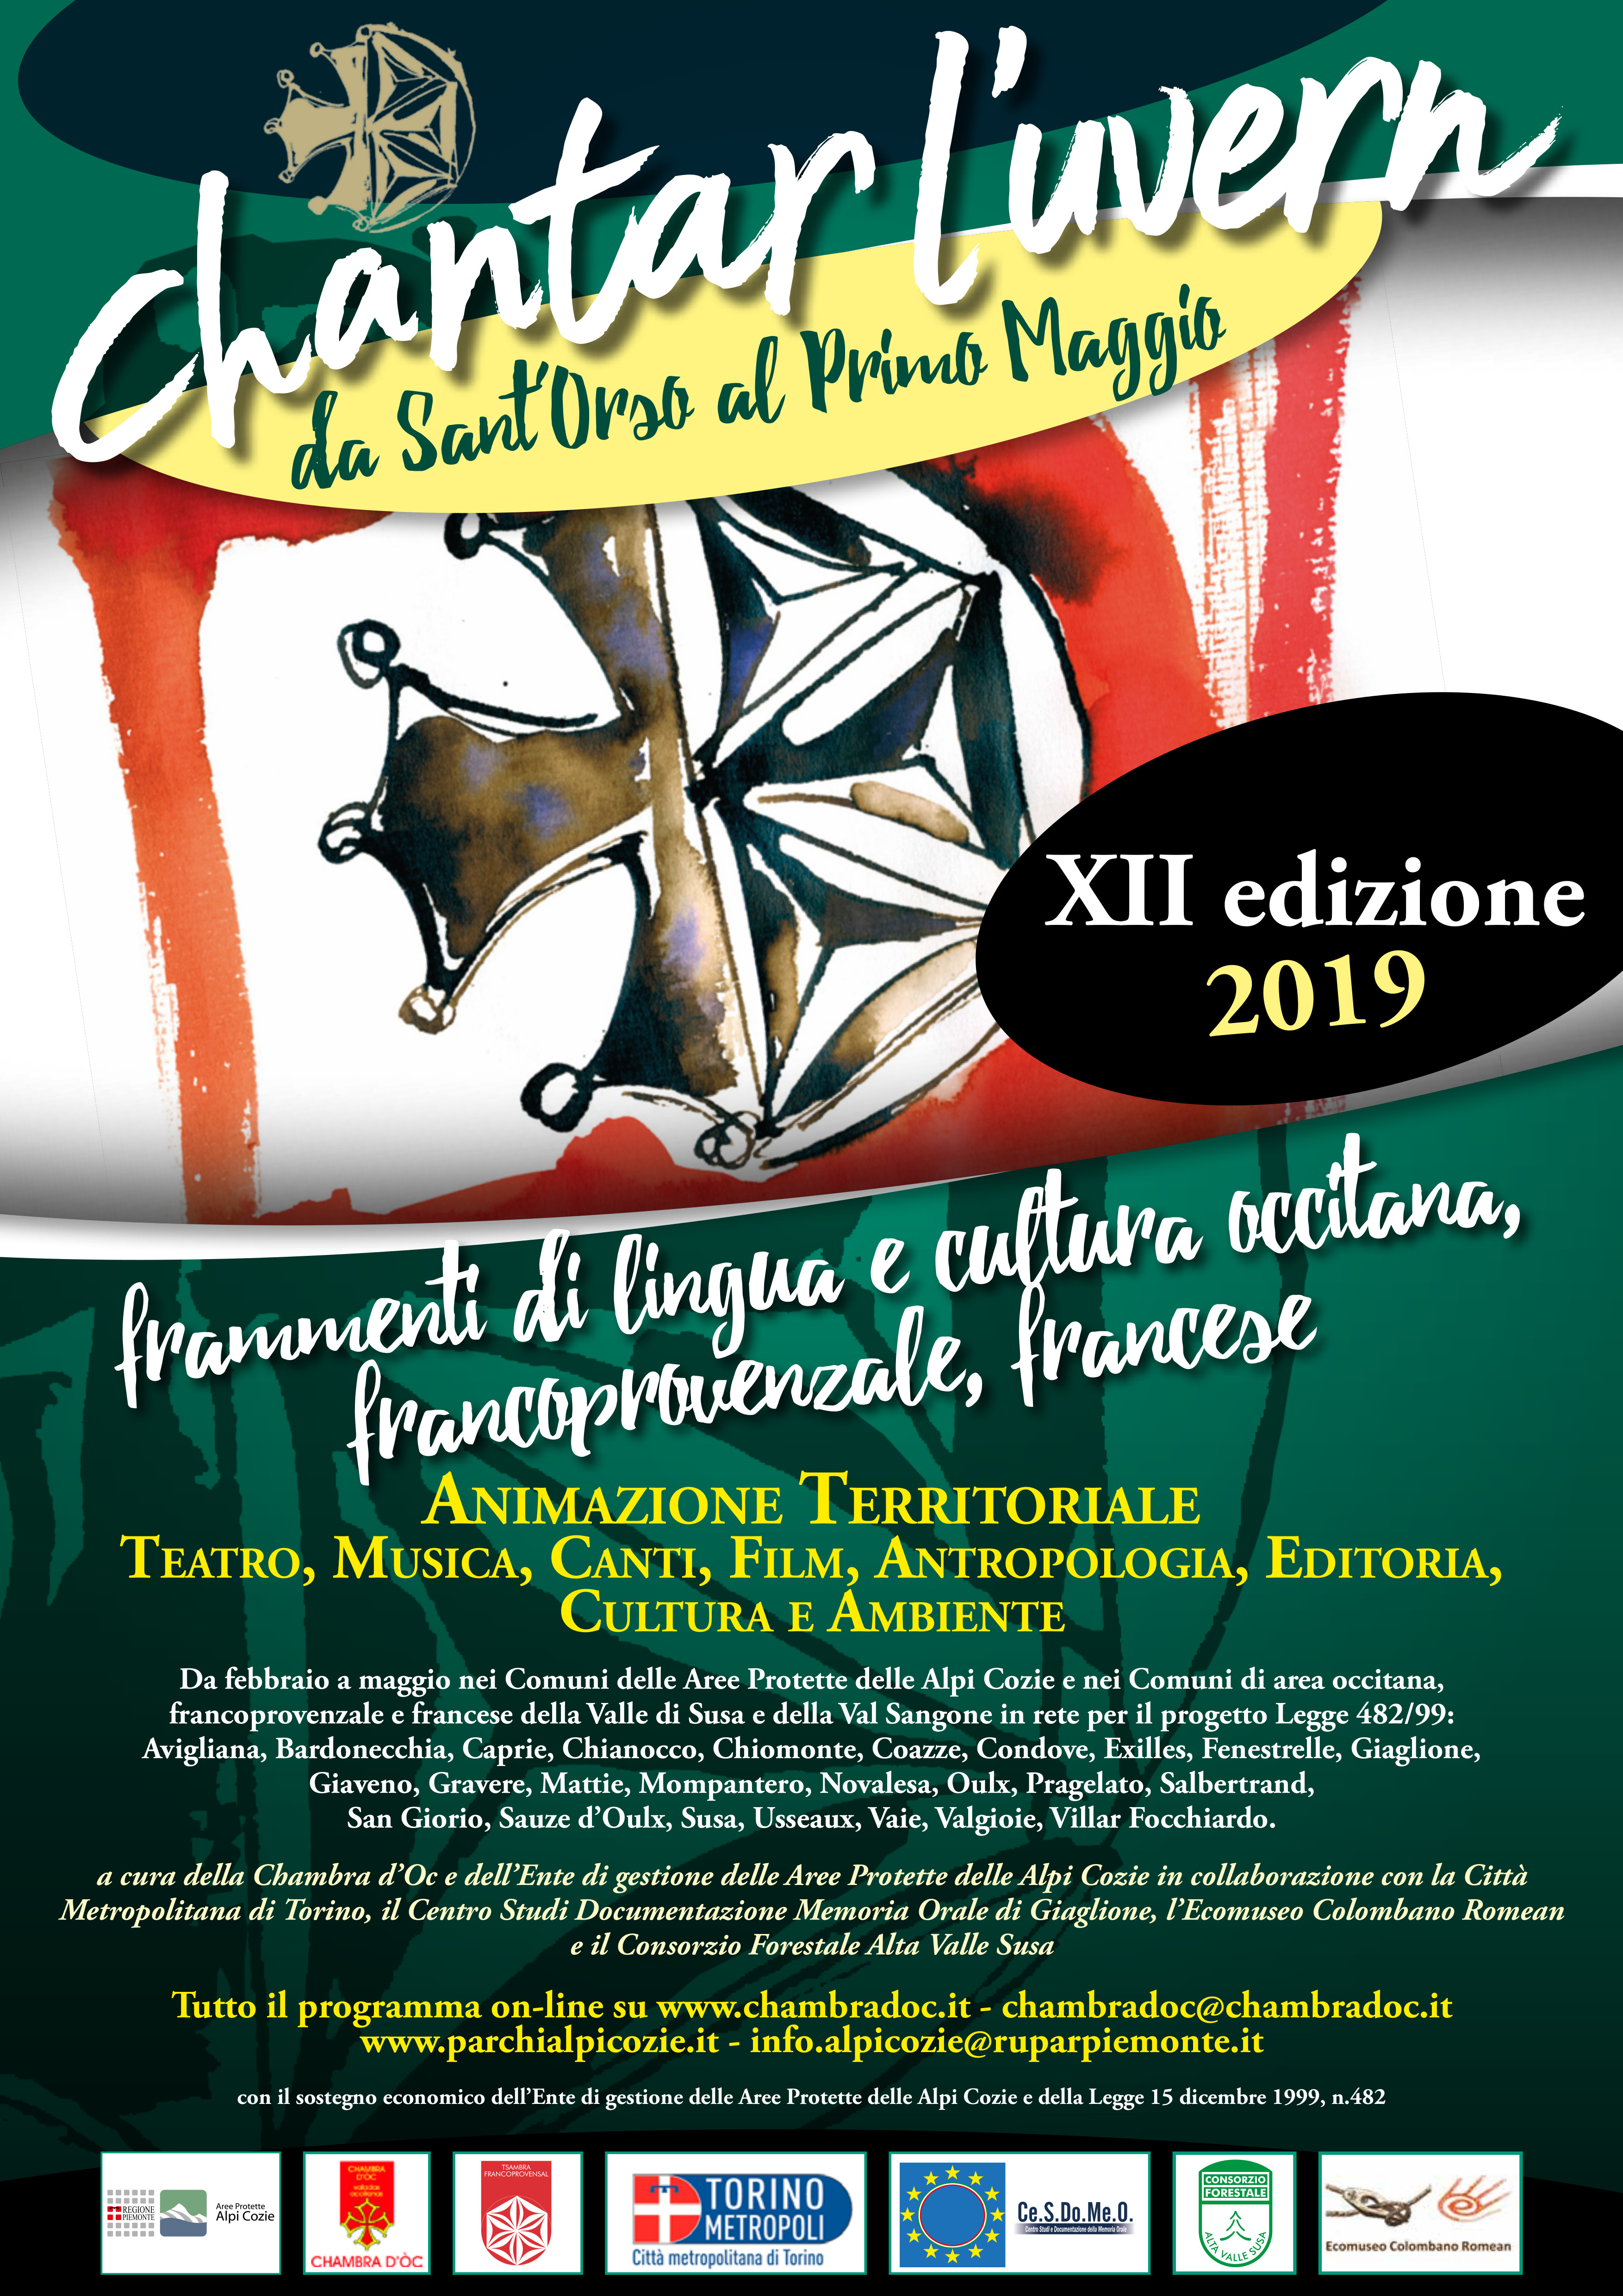 Chantar l'uvern XII edizione - “La produzione pittorica di Bartolomeo e Sebastiano Serra in Valsusa”